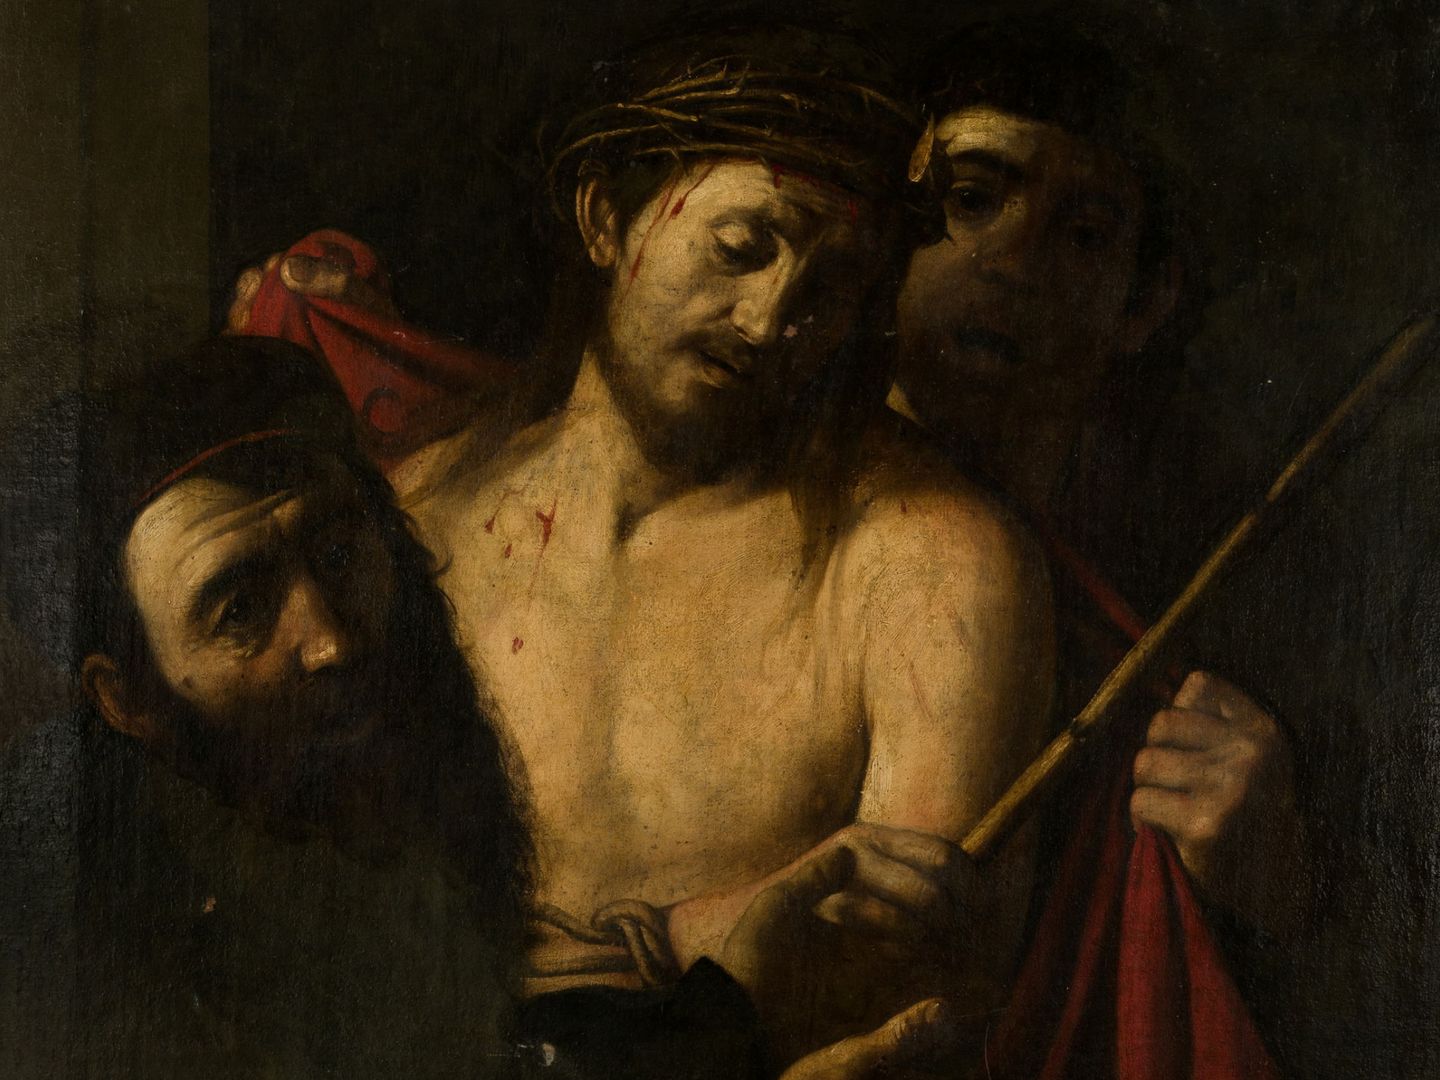 'The Crowning of Thorns', la obra de Caravaggio pendiente de autenticación. (Reuters)